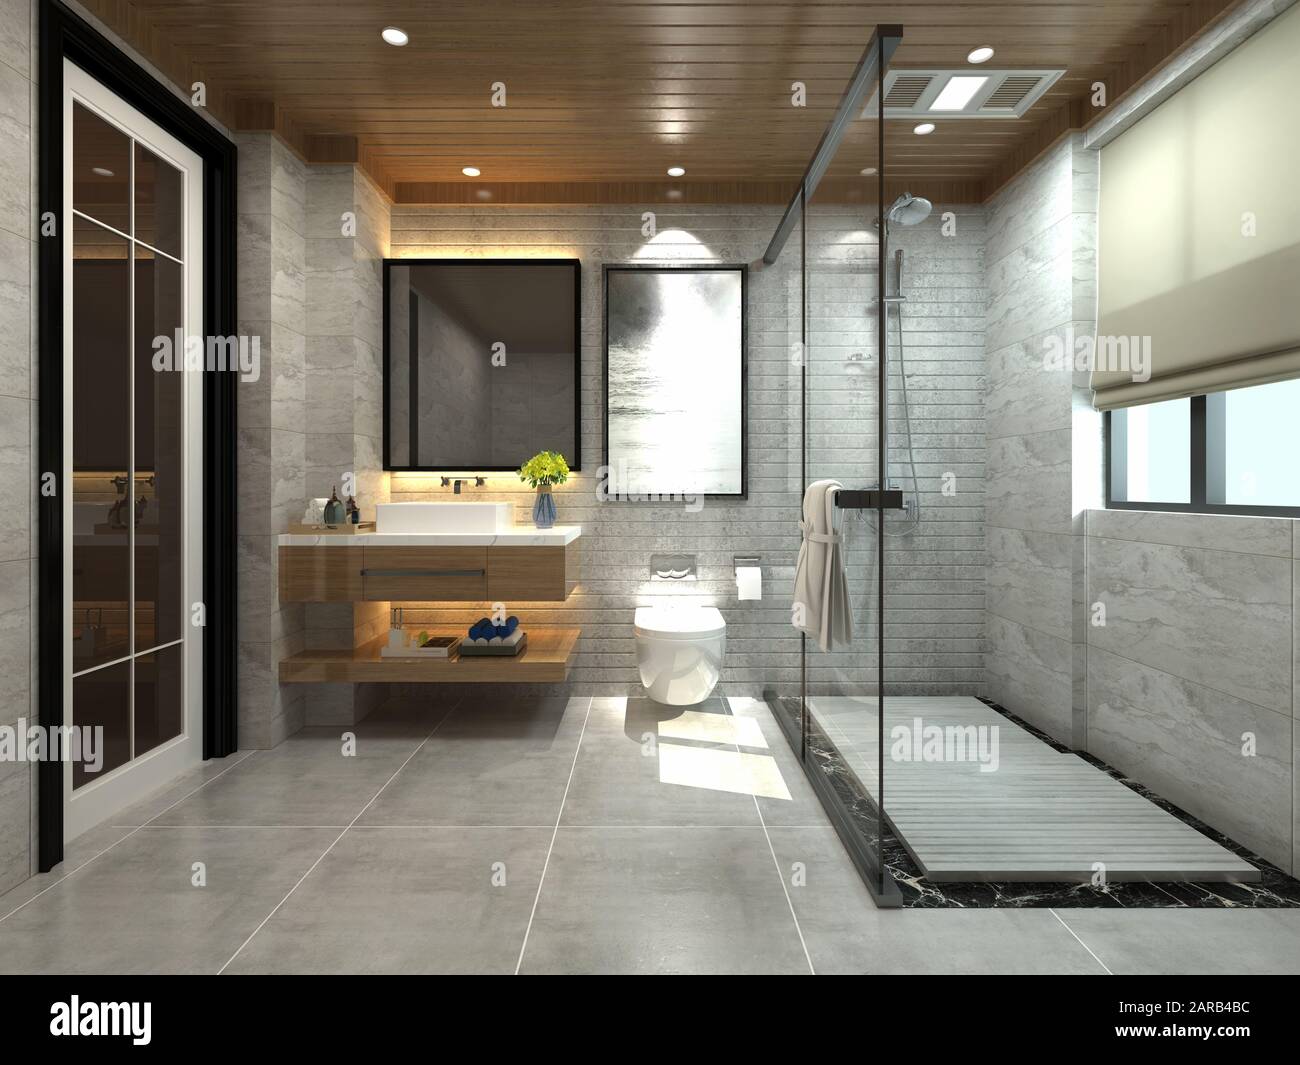 Le rendu 3D d'une salle de bains moderne Banque D'Images